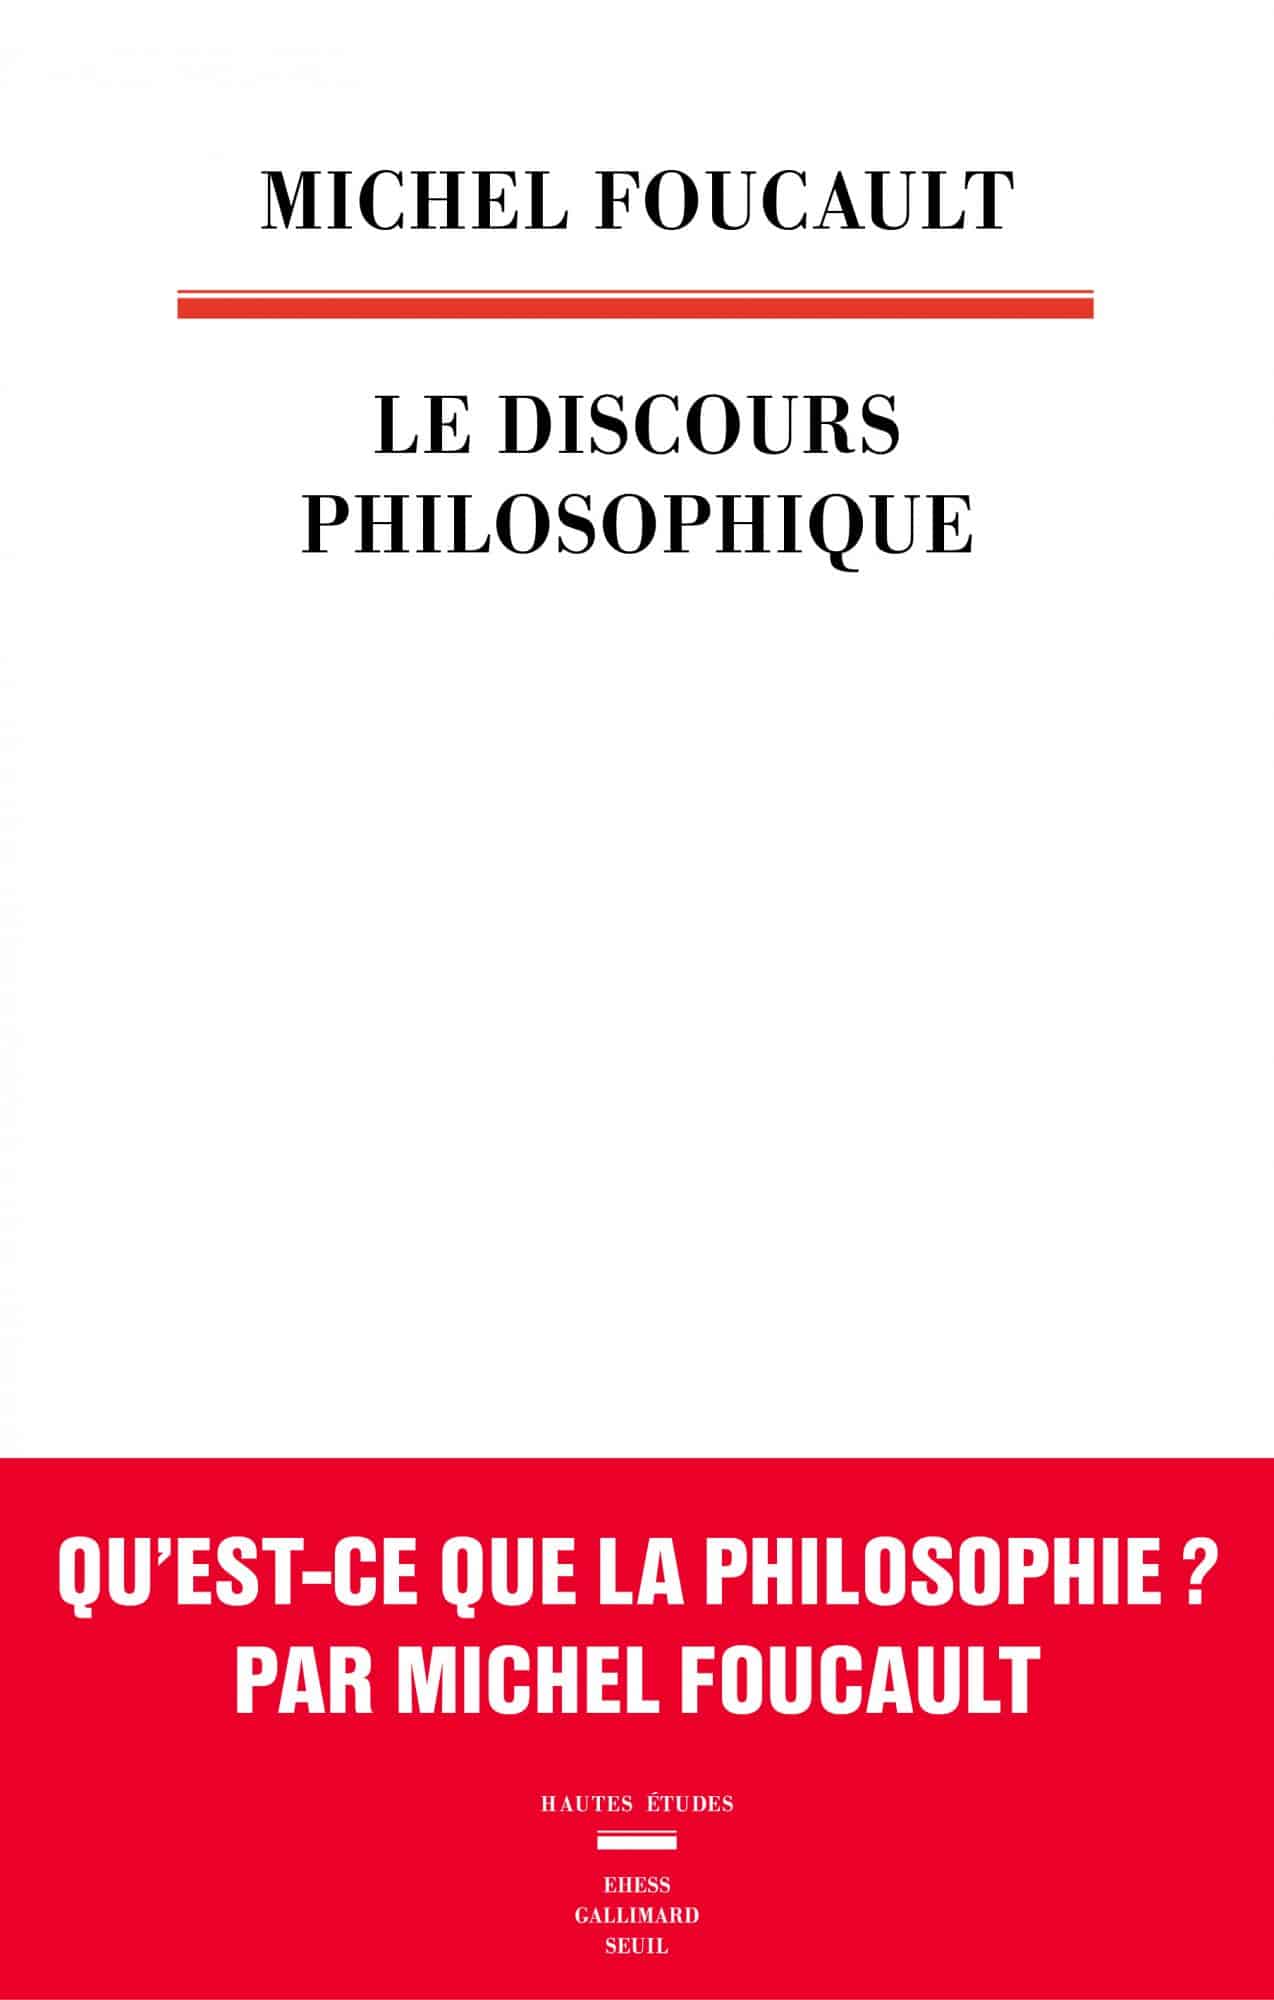 Couverture du Discours philosophique de Michel Foucault